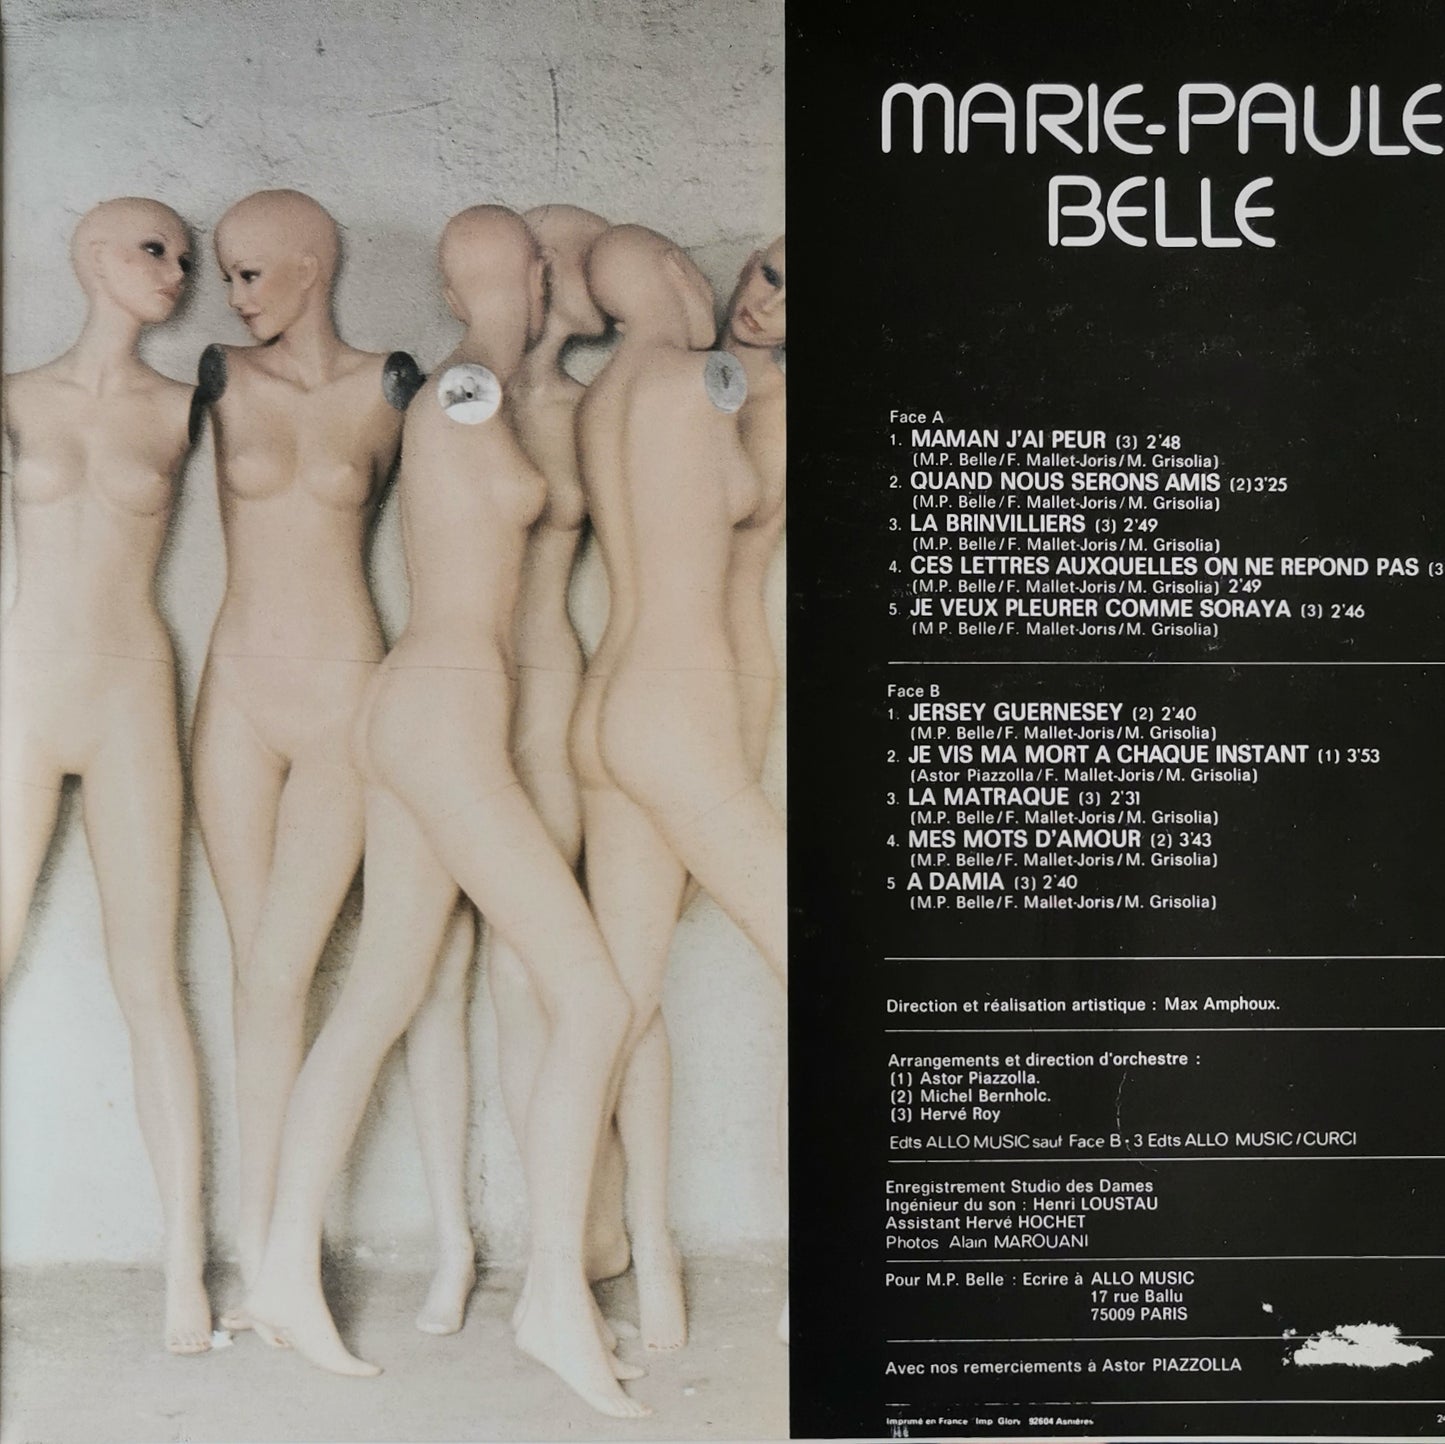 MARIE PAULE BELLE - Maman J'ai Peur